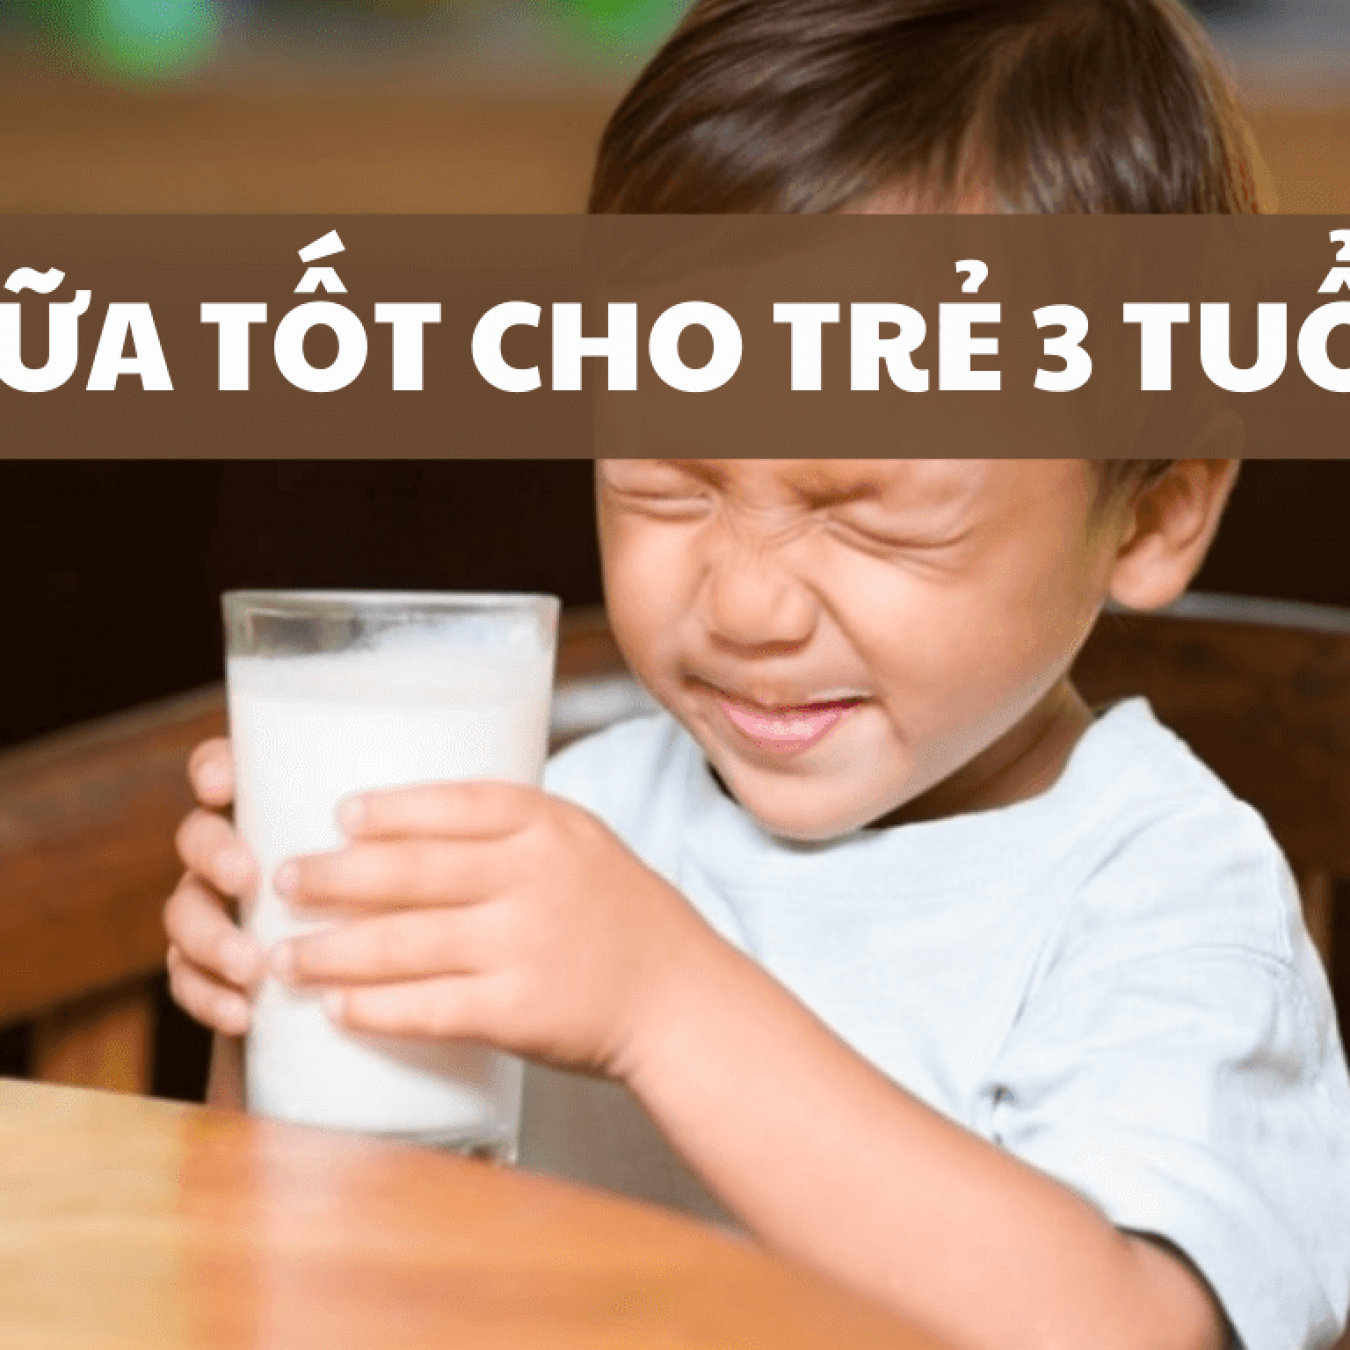 Bật mí 7 loại sữa tốt cho trẻ 3 tuổi lớn nhanh như thổi